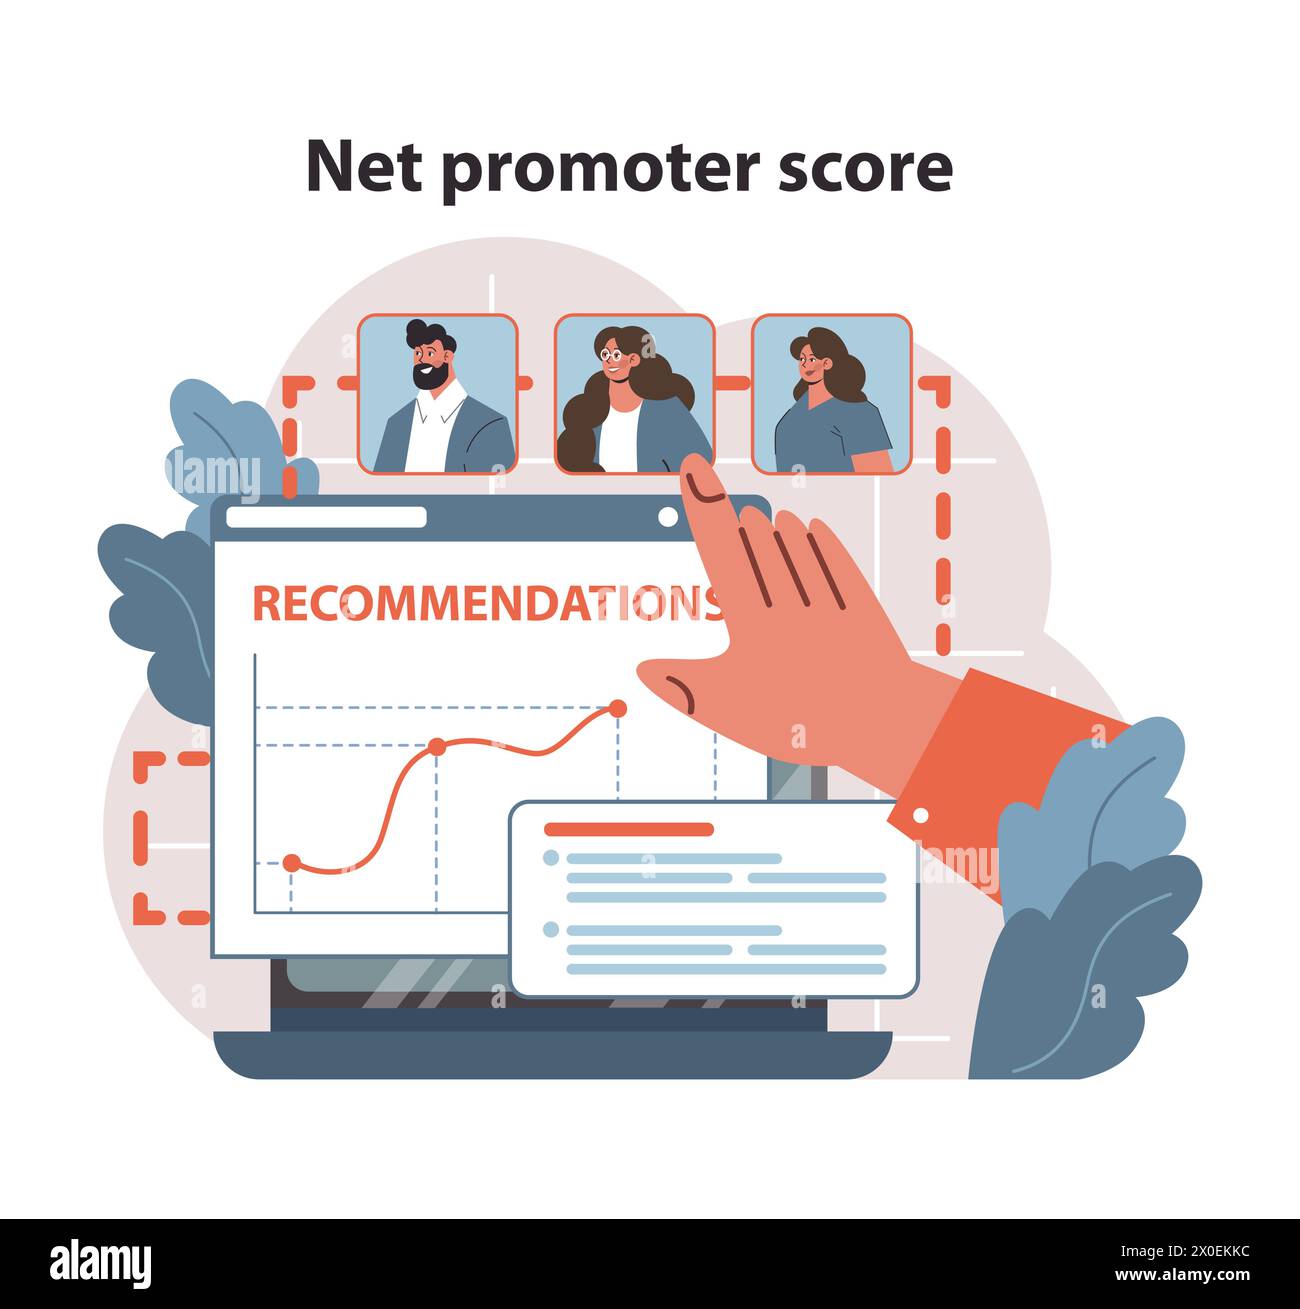 NET Promoter Score Concept. Analizzare le recensioni dei clienti su un notebook, misurare le prestazioni aziendali e la soddisfazione dei clienti con una curva di crescita visualizzata. Importanza del feedback. Illustrazione vettoriale piatta. Illustrazione Vettoriale